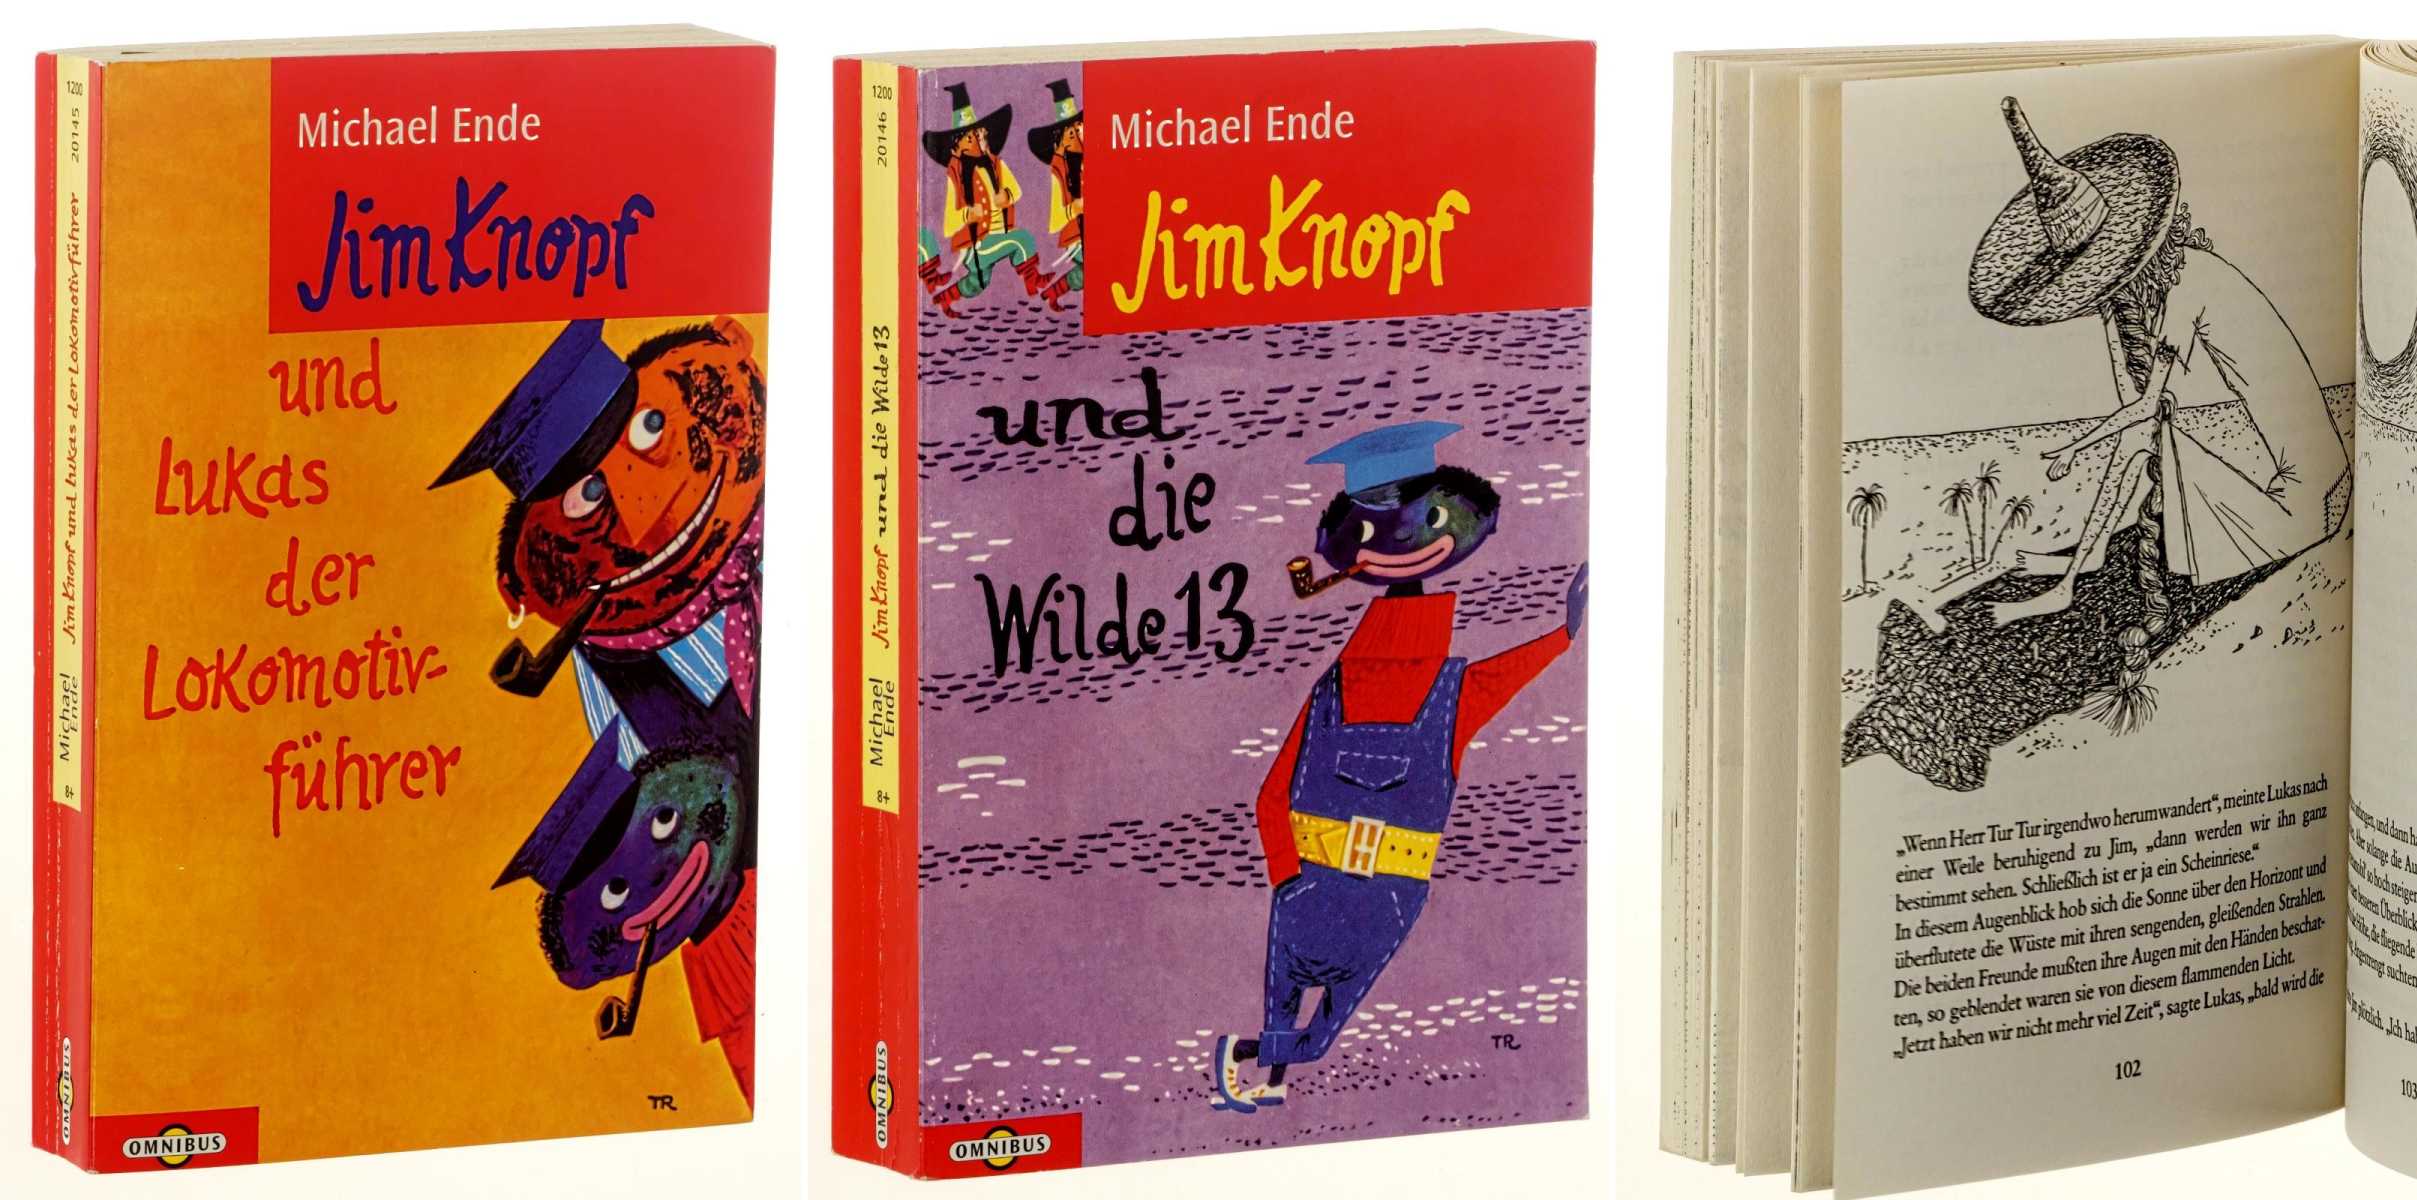 Ende, Michael:  Jim Knopf und Lukas der Lokomotivführer/ Jim Knopf und die Wilde 13. Mit Zeichnungen von F. J. Trip. 